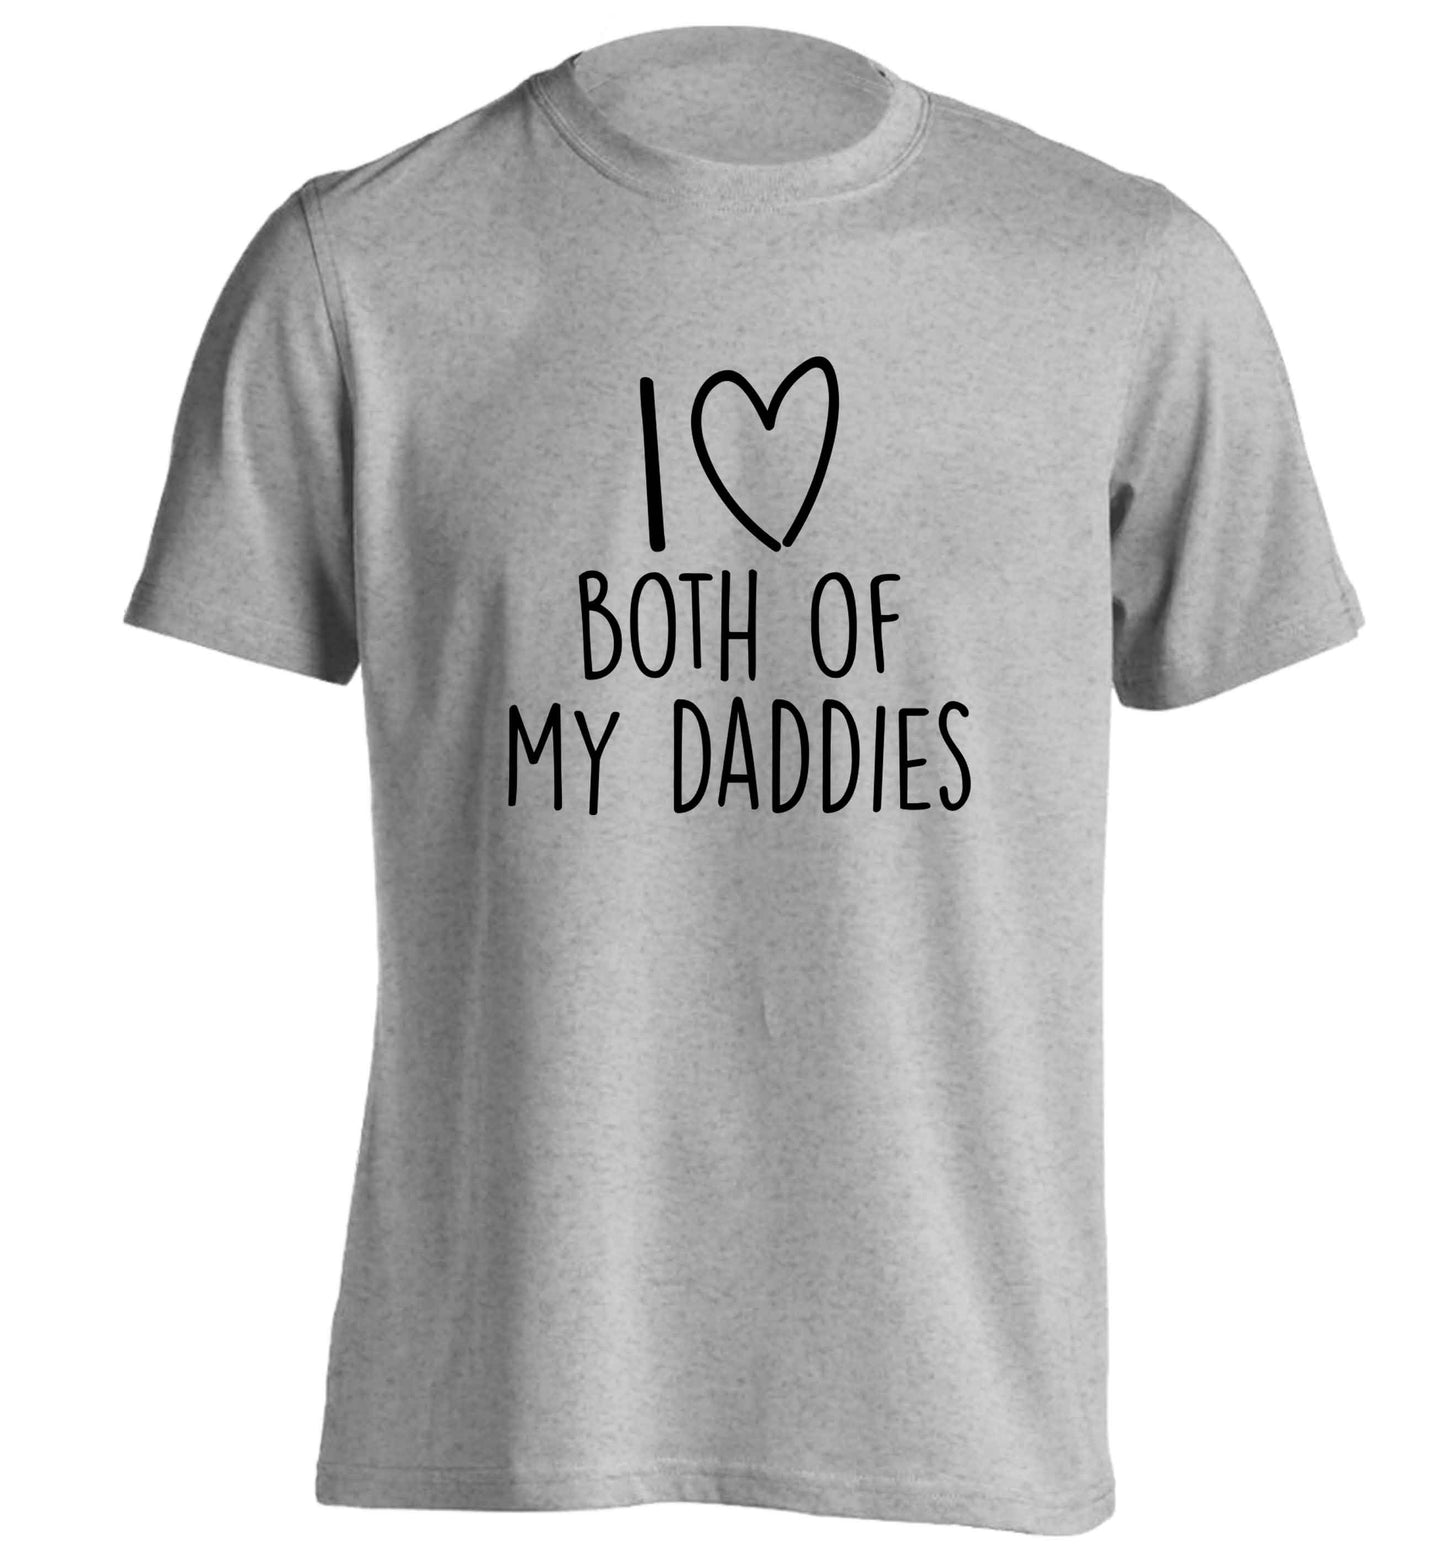 I love both of my daddies adults unisex grey Tshirt 2XL